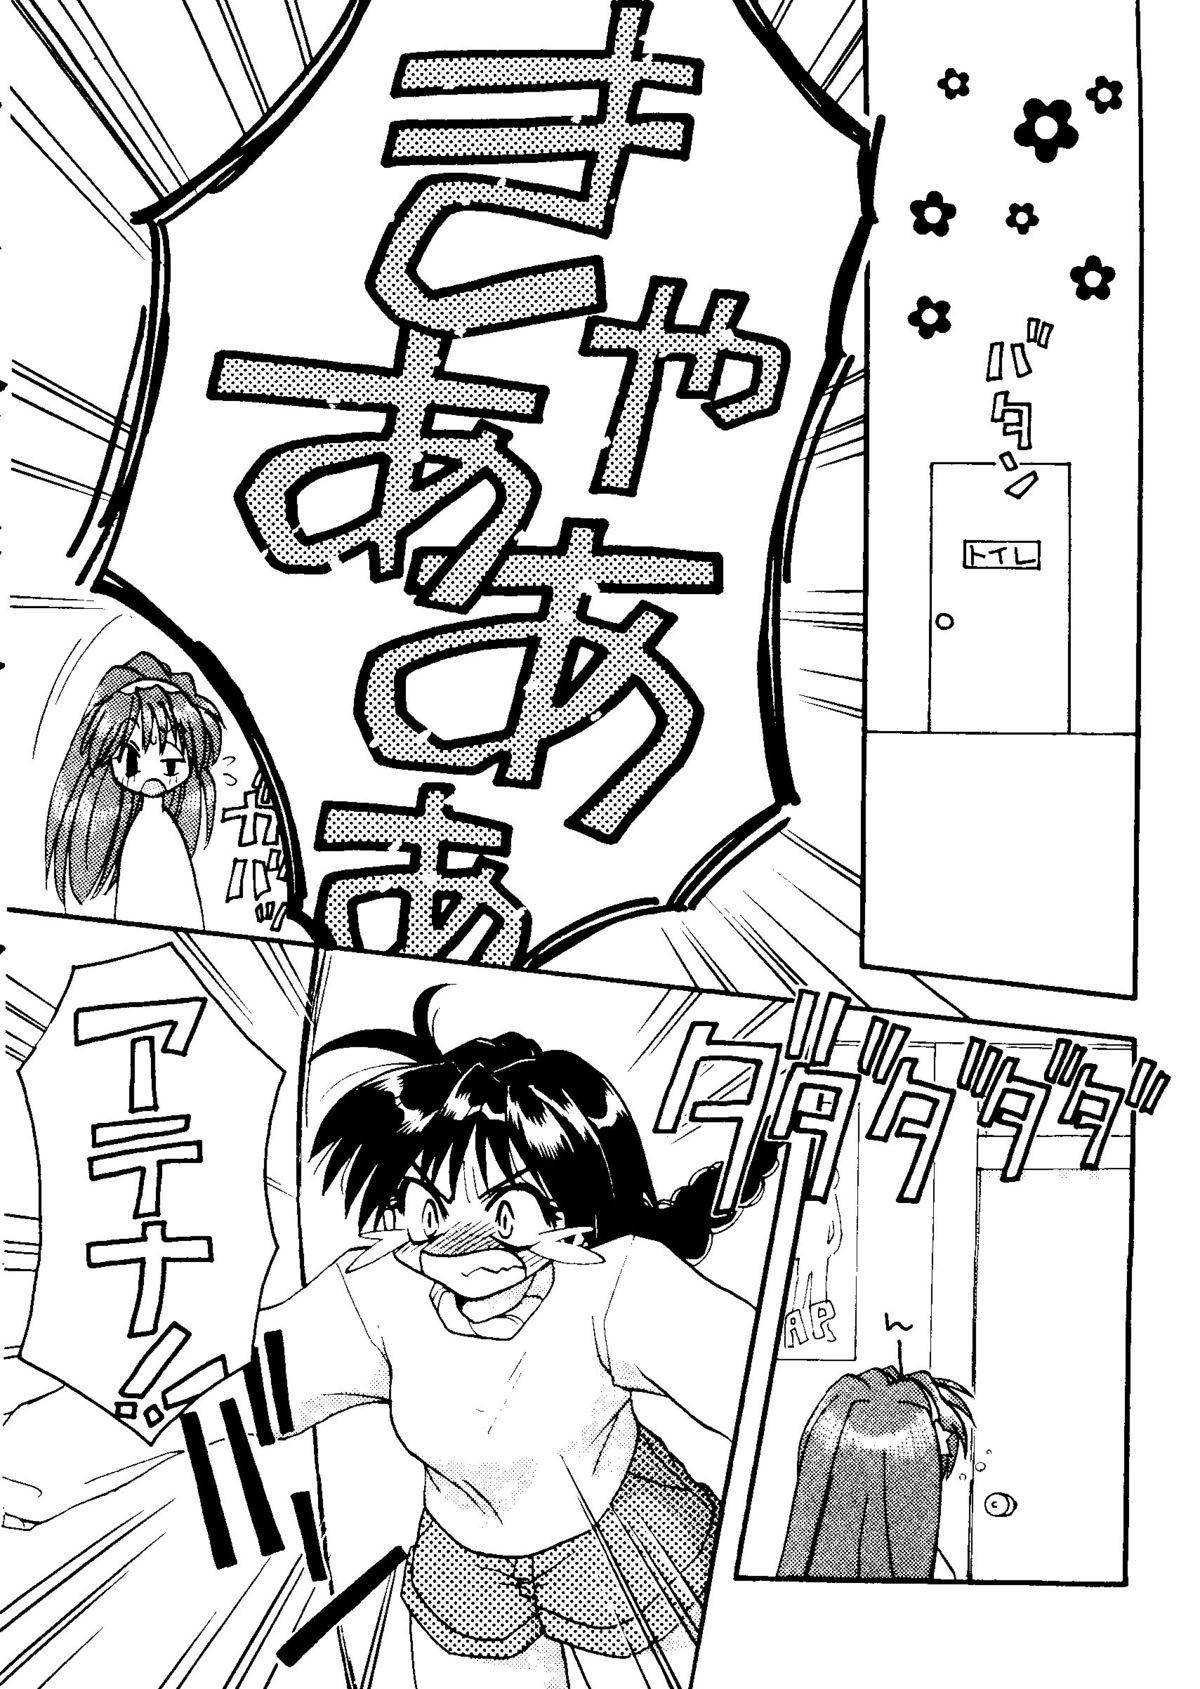 Kinky Girl's Parade 2000 5 - King of fighters Sakura taisen Martian successor nadesico Coroa - Page 9